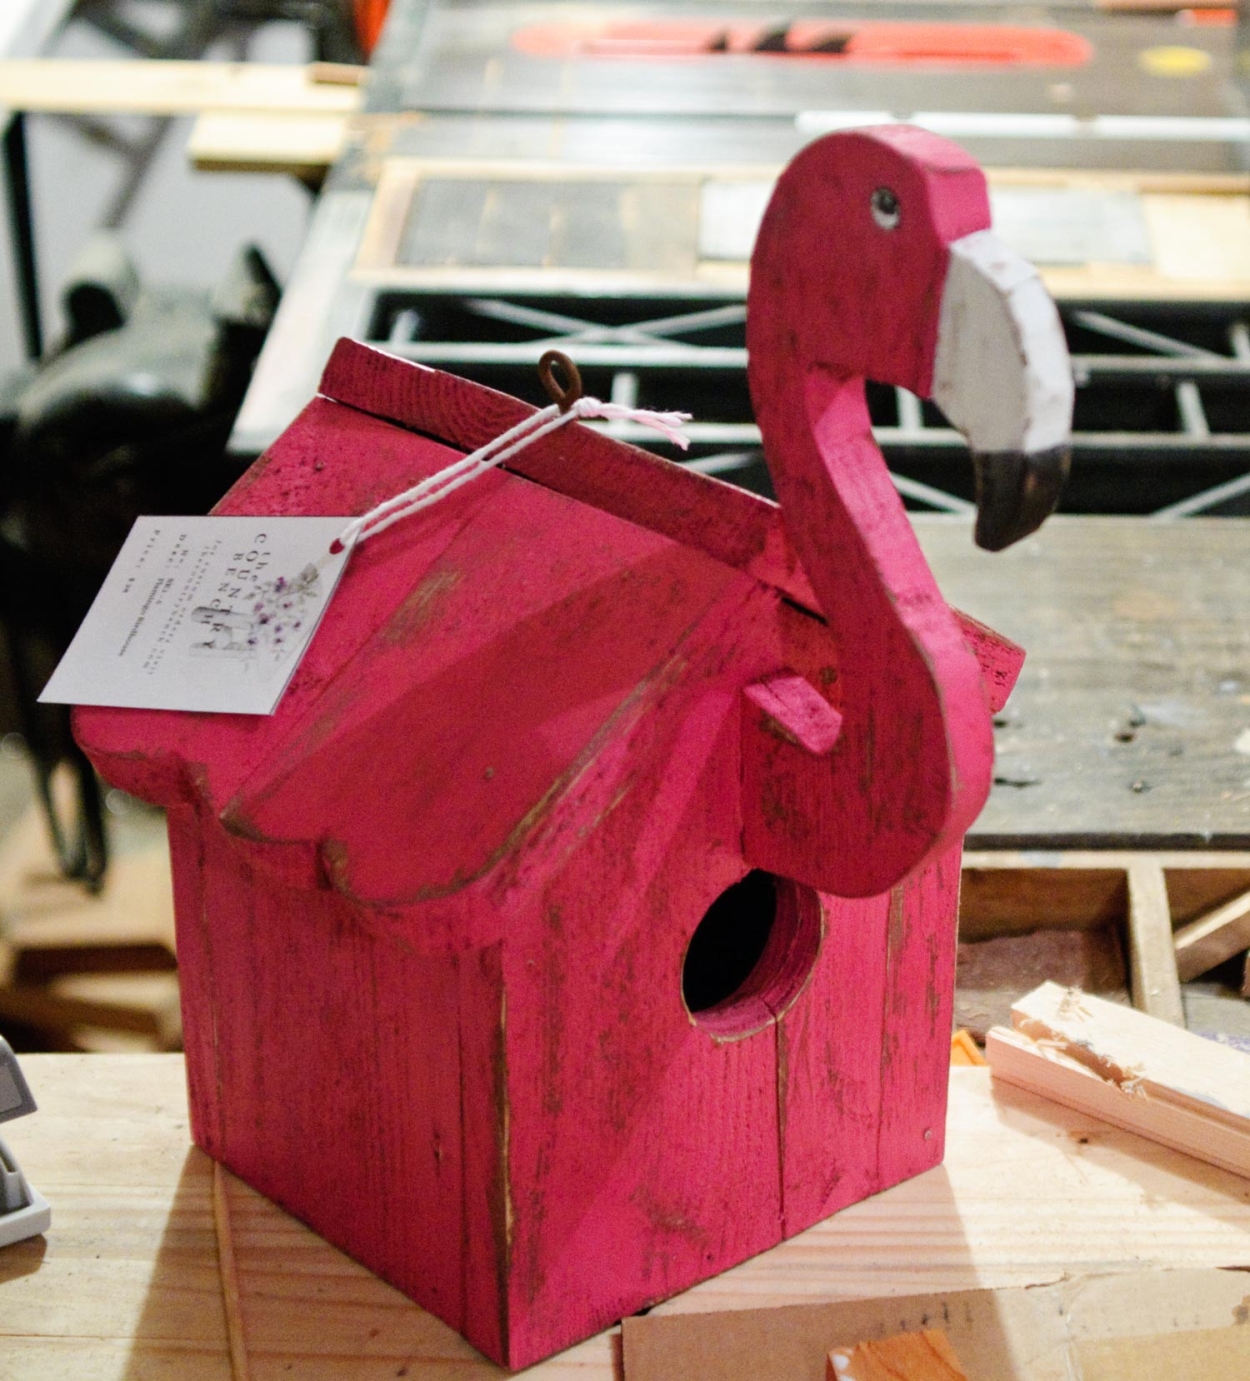 The Flamingo Birdhouse